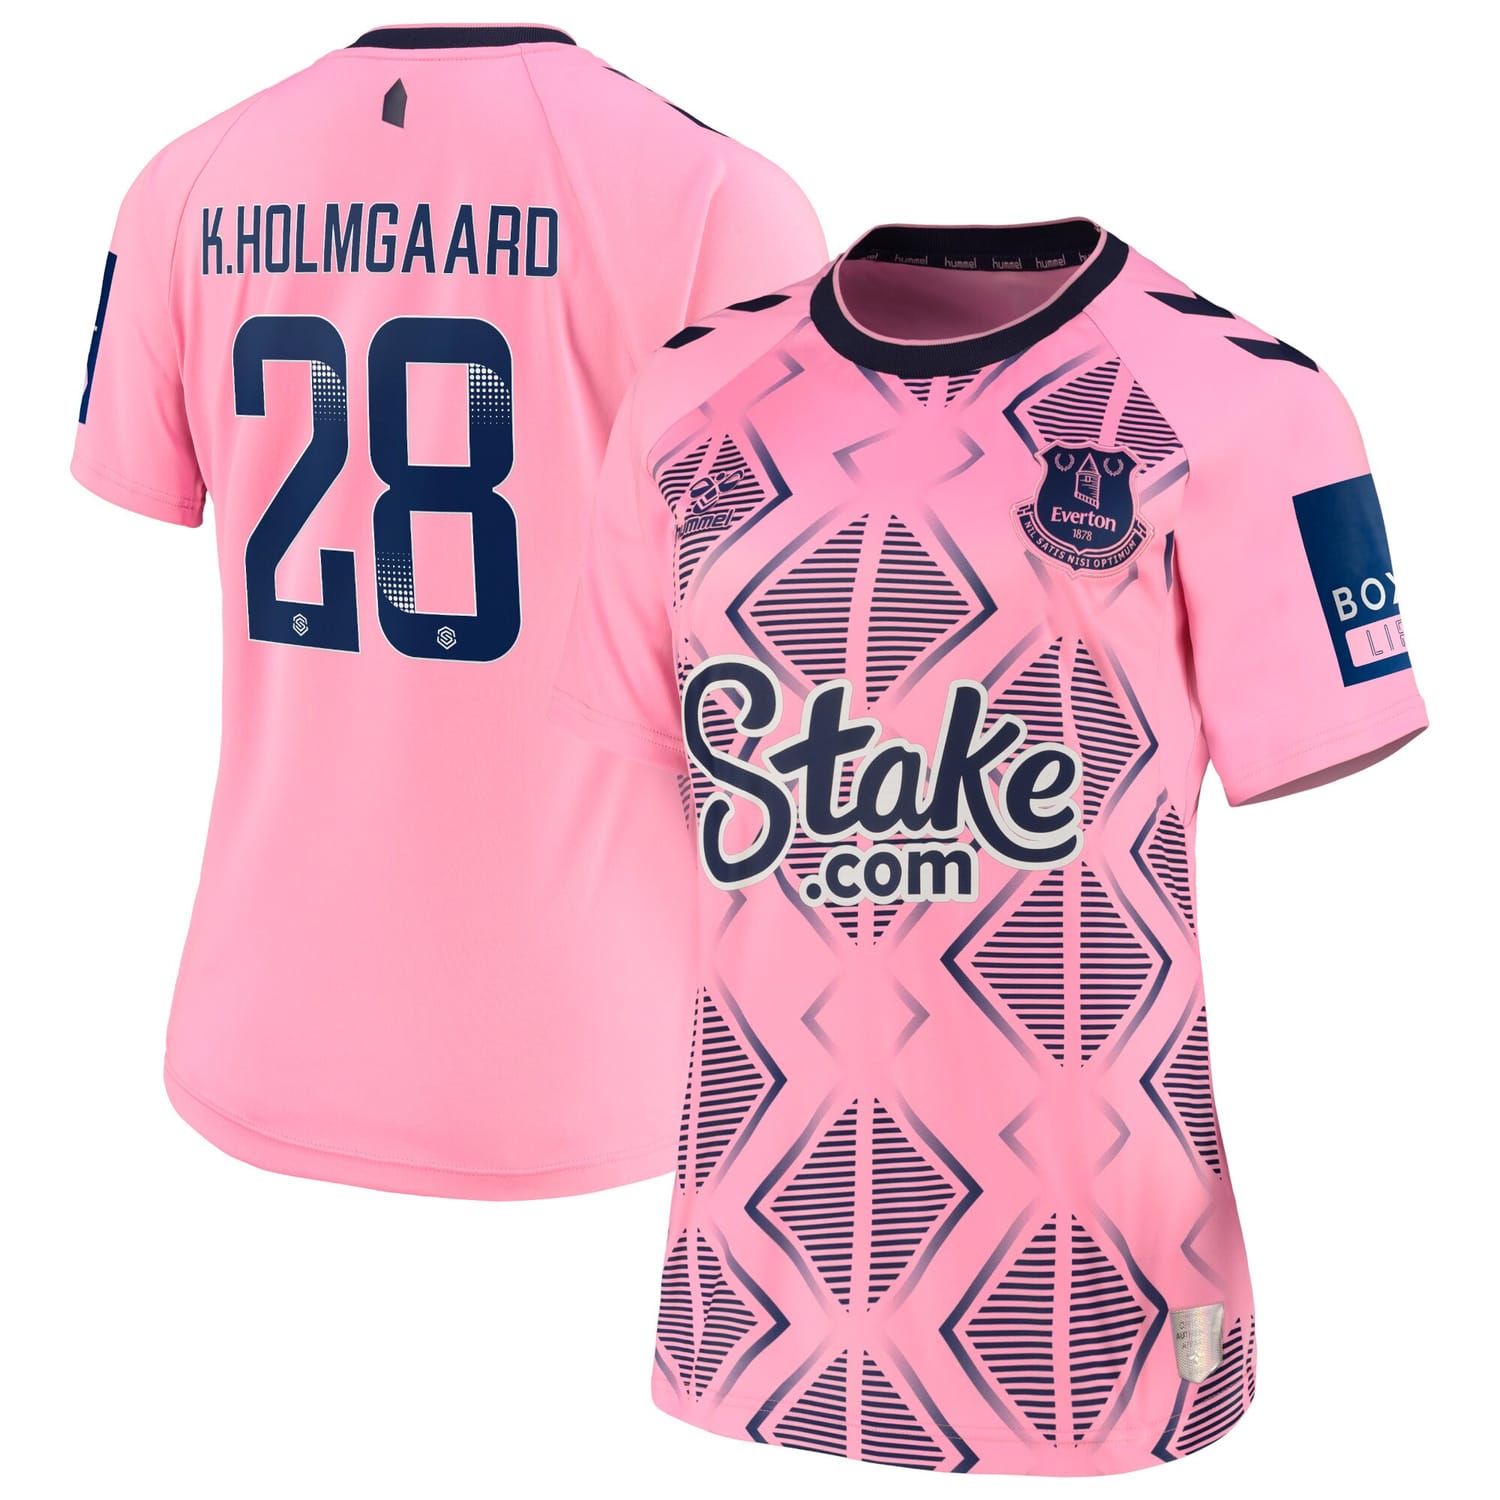 Premier League Everton Away WSL Jersey Shirt 2022-23 player Karen Holmgaard 28 printing for Women